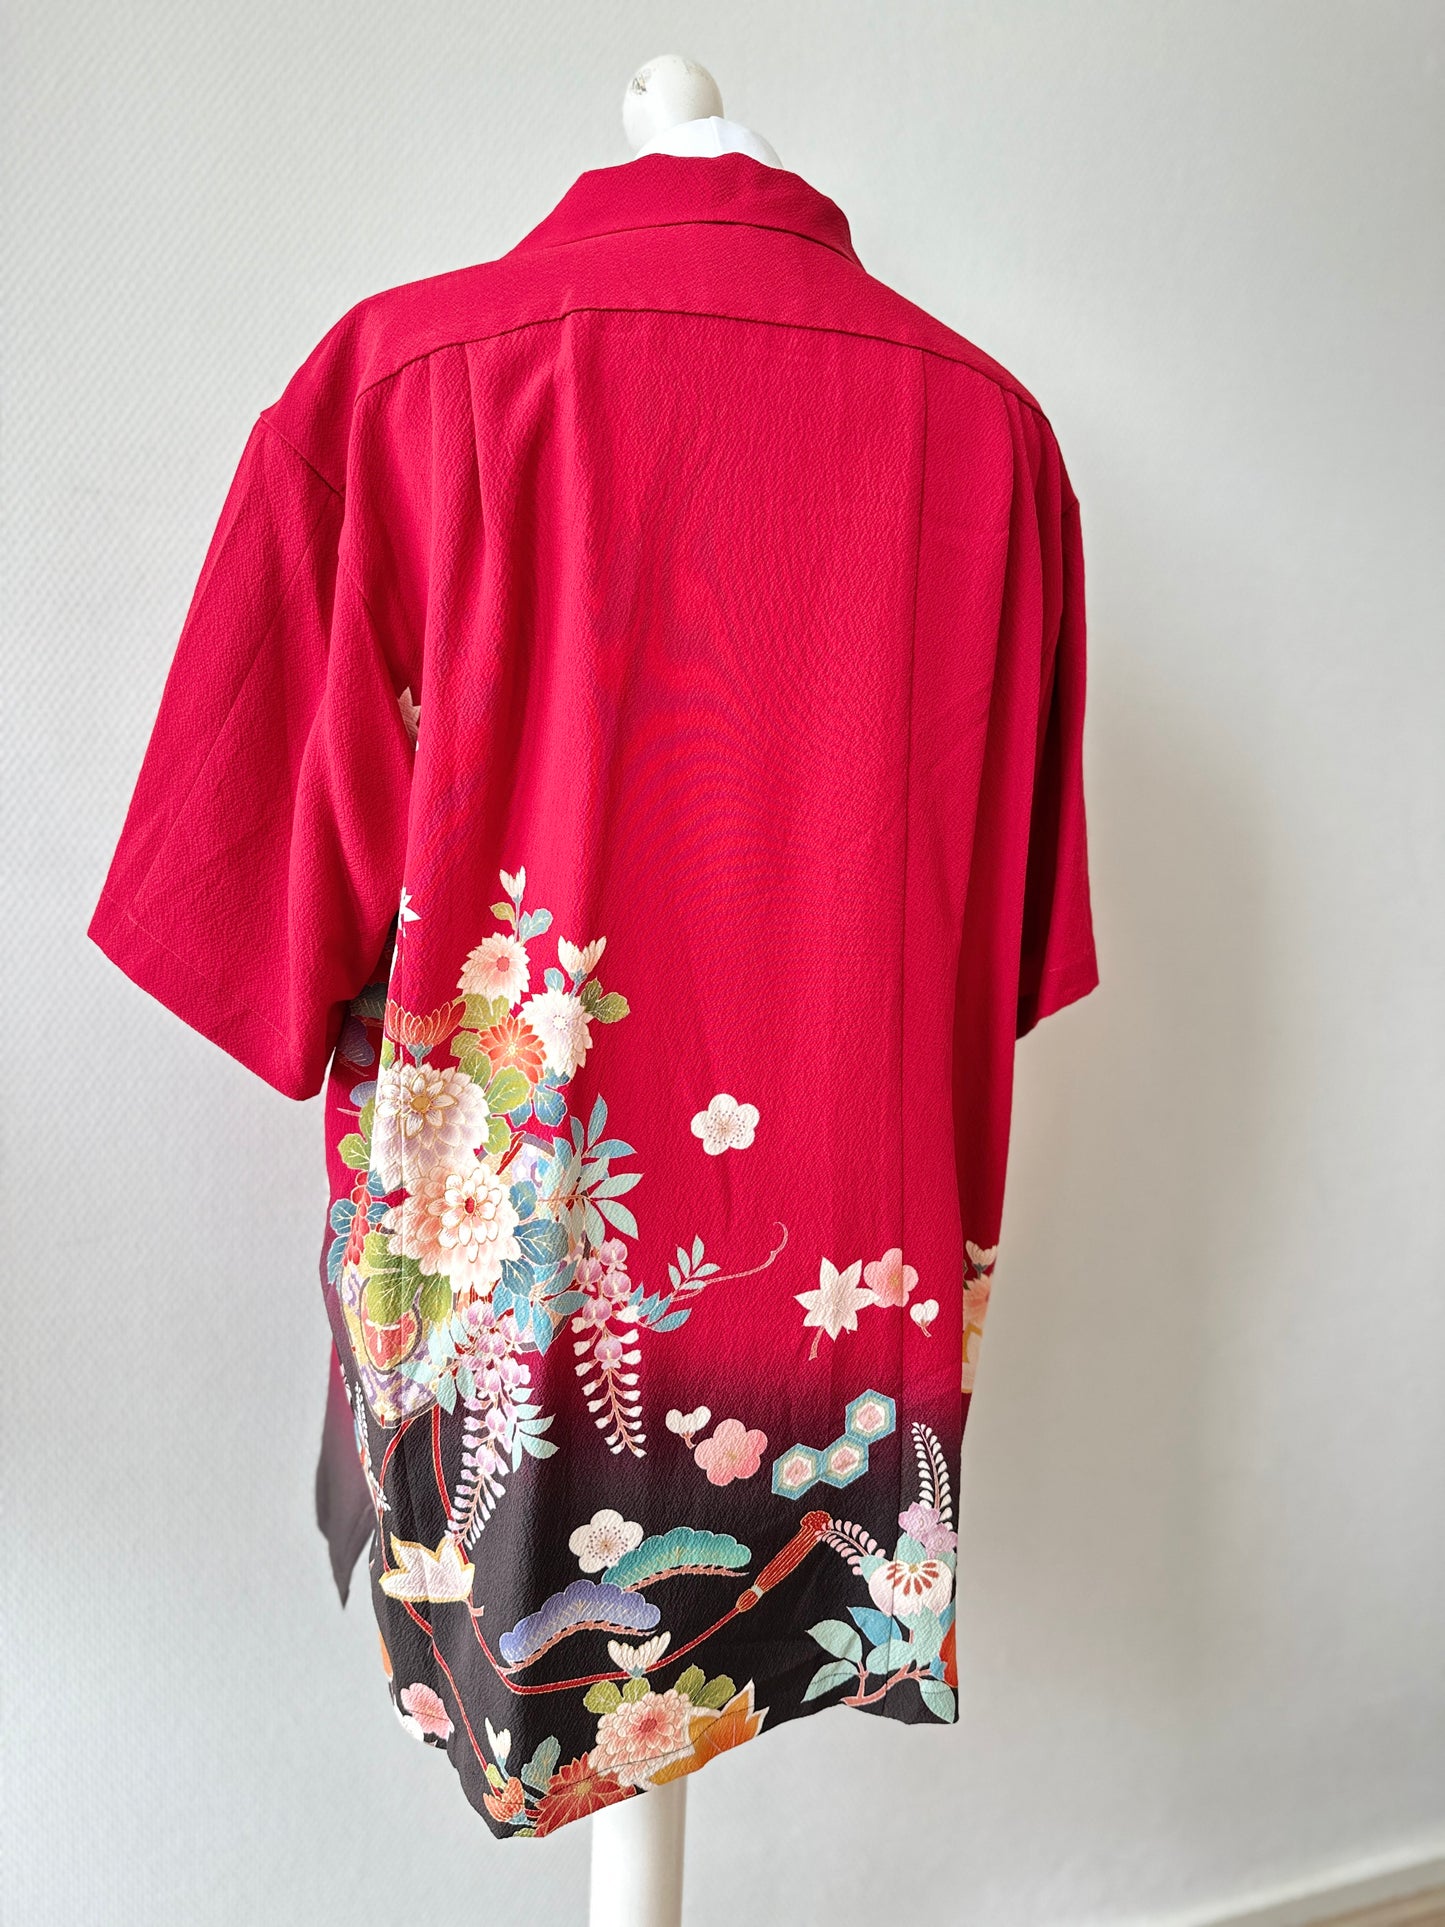 【Rode, dennenboom en blauwe leeftijd】 Hawaiiaans shirt/maat: 2l ＜ Nieuw ・ zijde ＞ voor mannen, voor vrouwen, Japanse kimono, Japan unisexese kleding, unisex, Japanse geschenken, origineel item